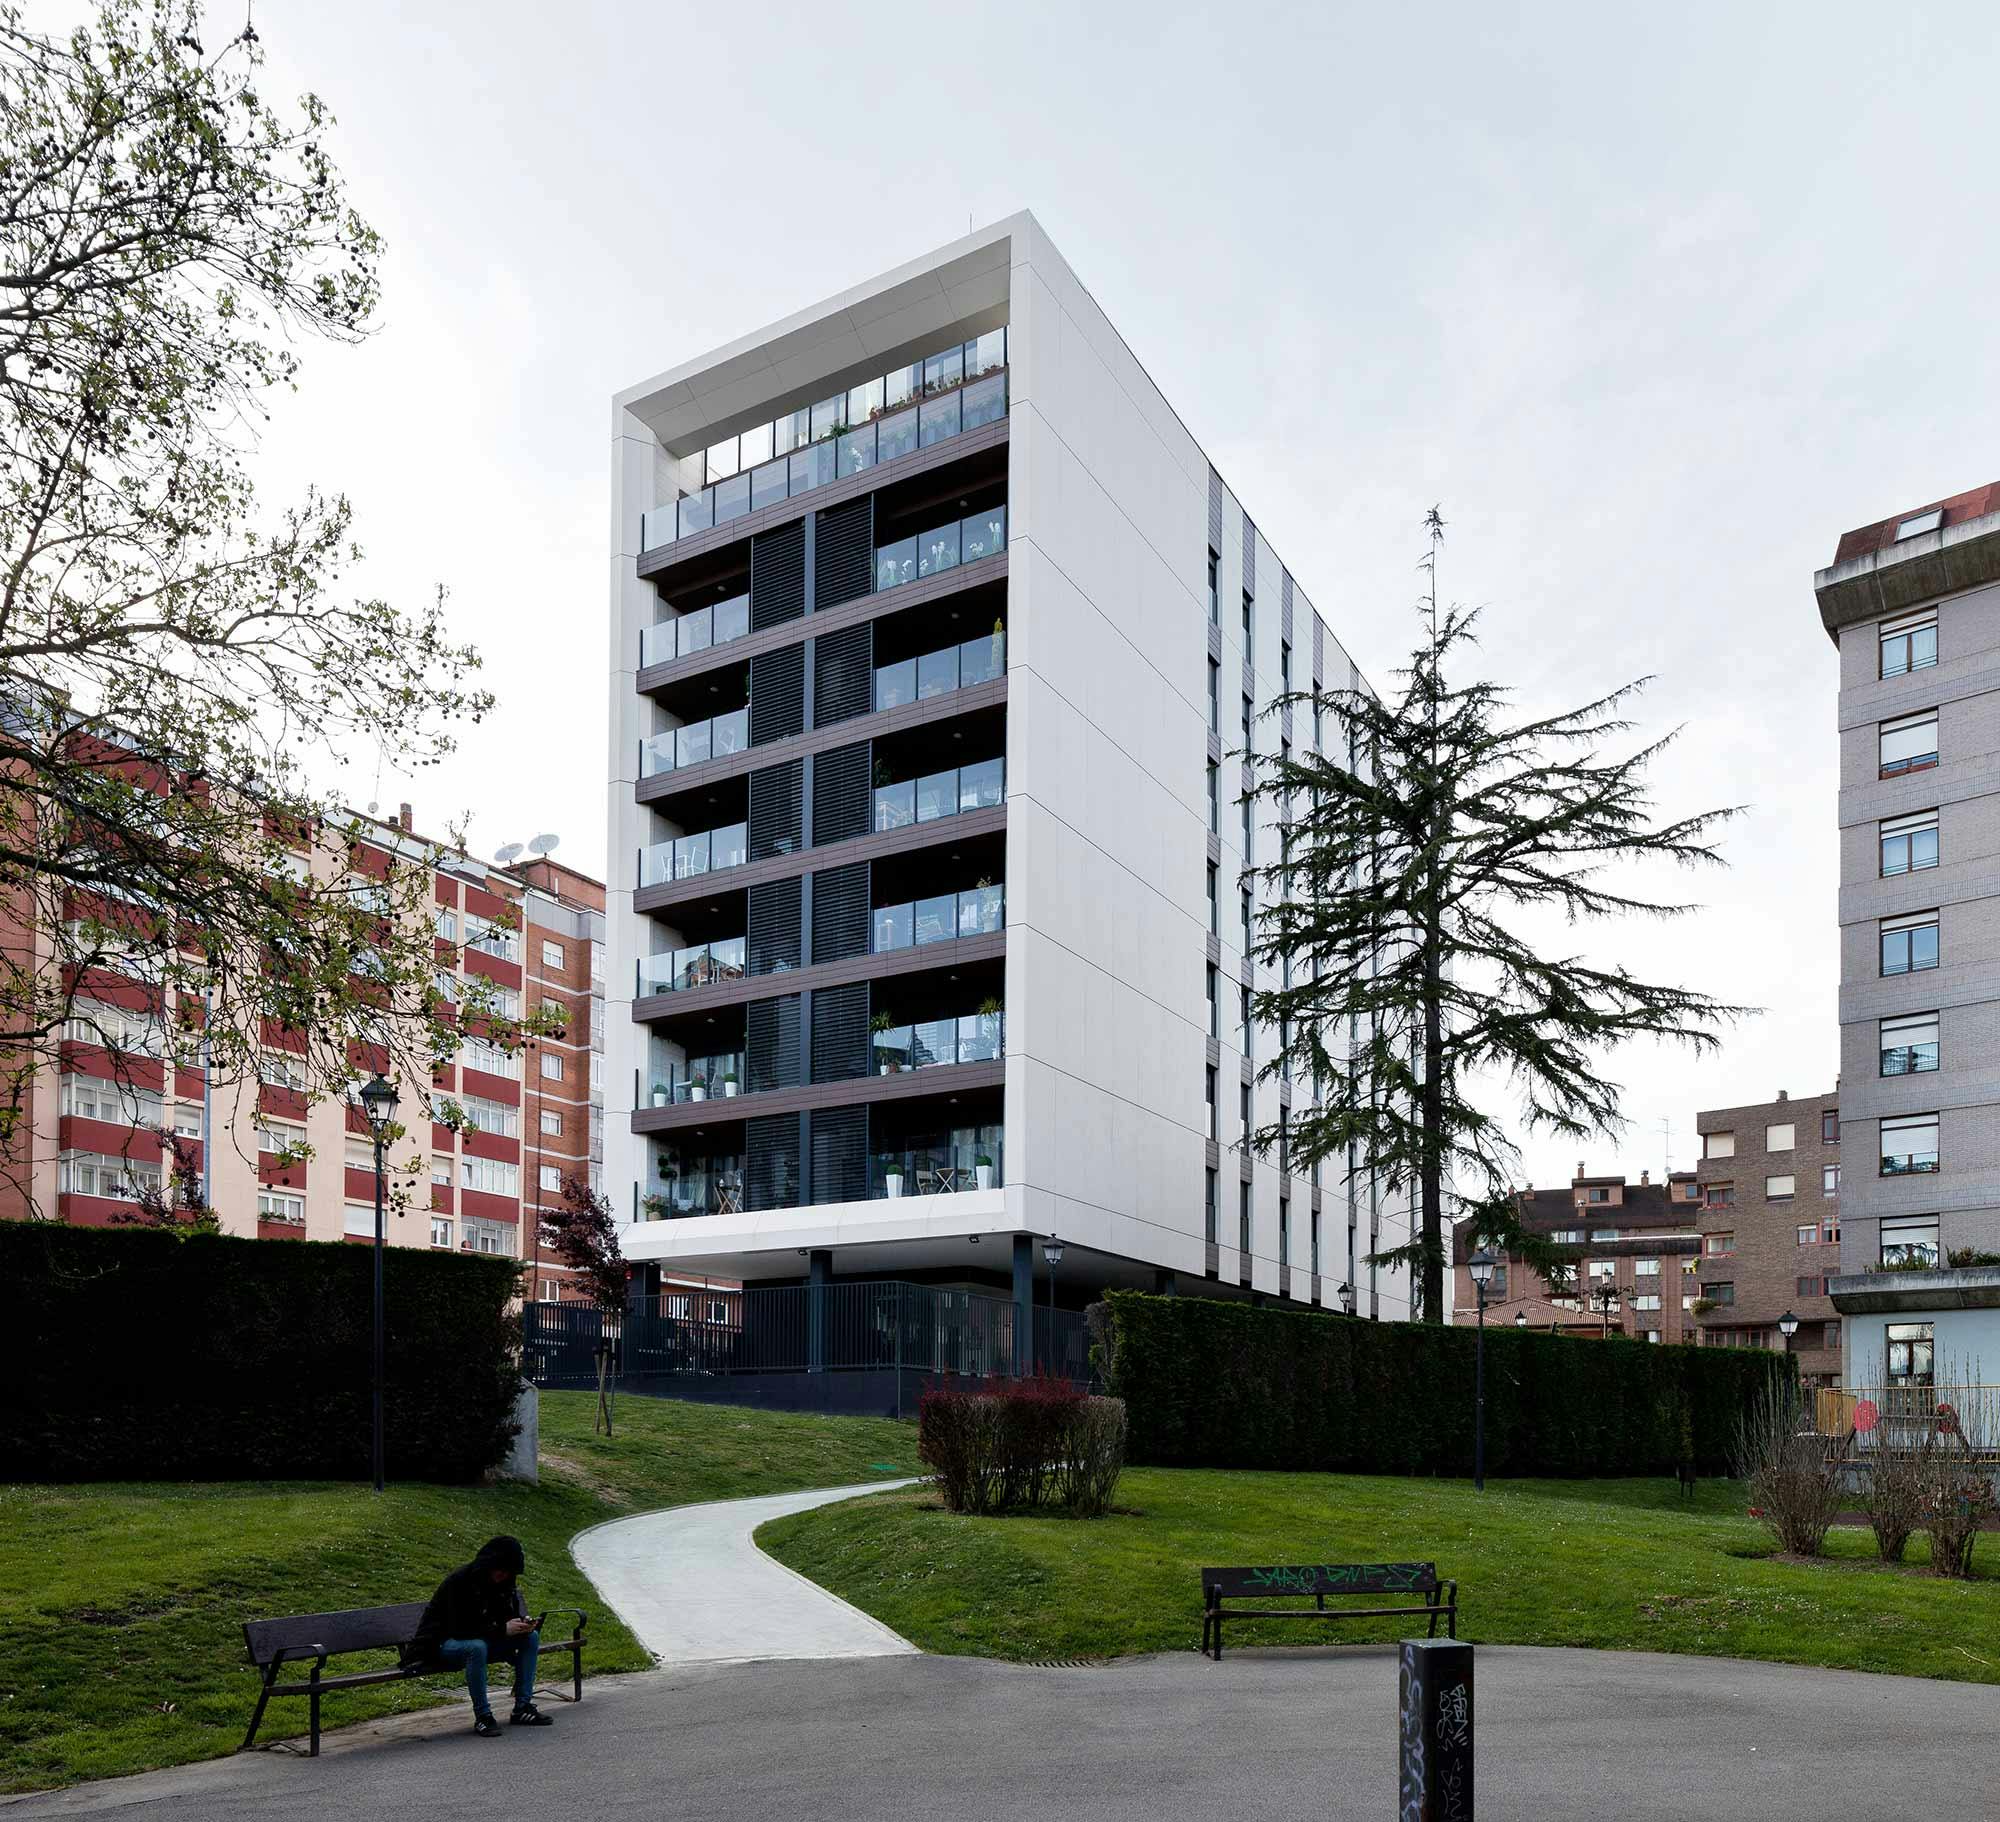 Numero immagine 36 della sezione corrente di Functional homes that blend in with their surroundings thanks to DKTN and Silestone di Cosentino Italia